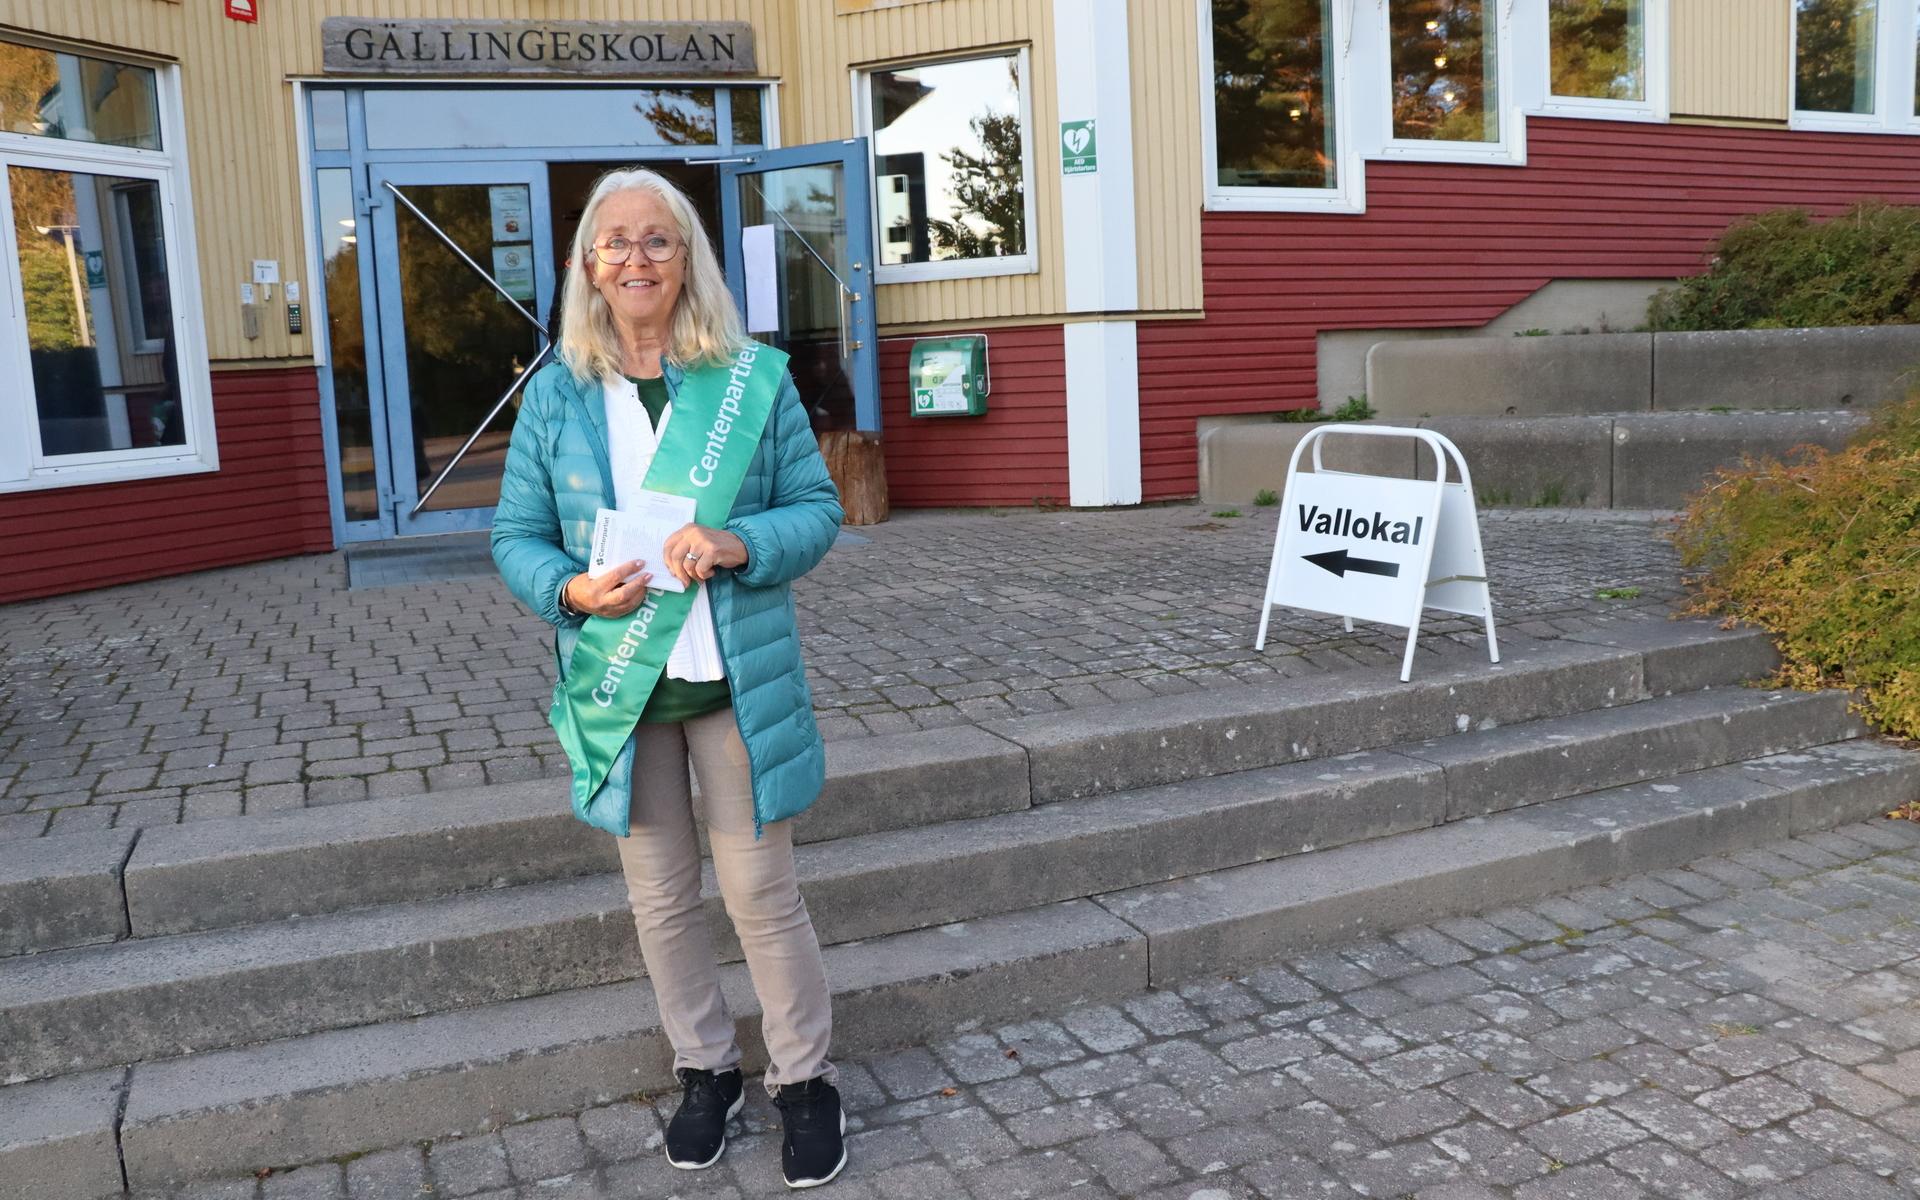 Inga-Lill Kihlberg från Gällinge har delat ut valsedlar i flera val tidigare. Hon gillar att prata med folk.